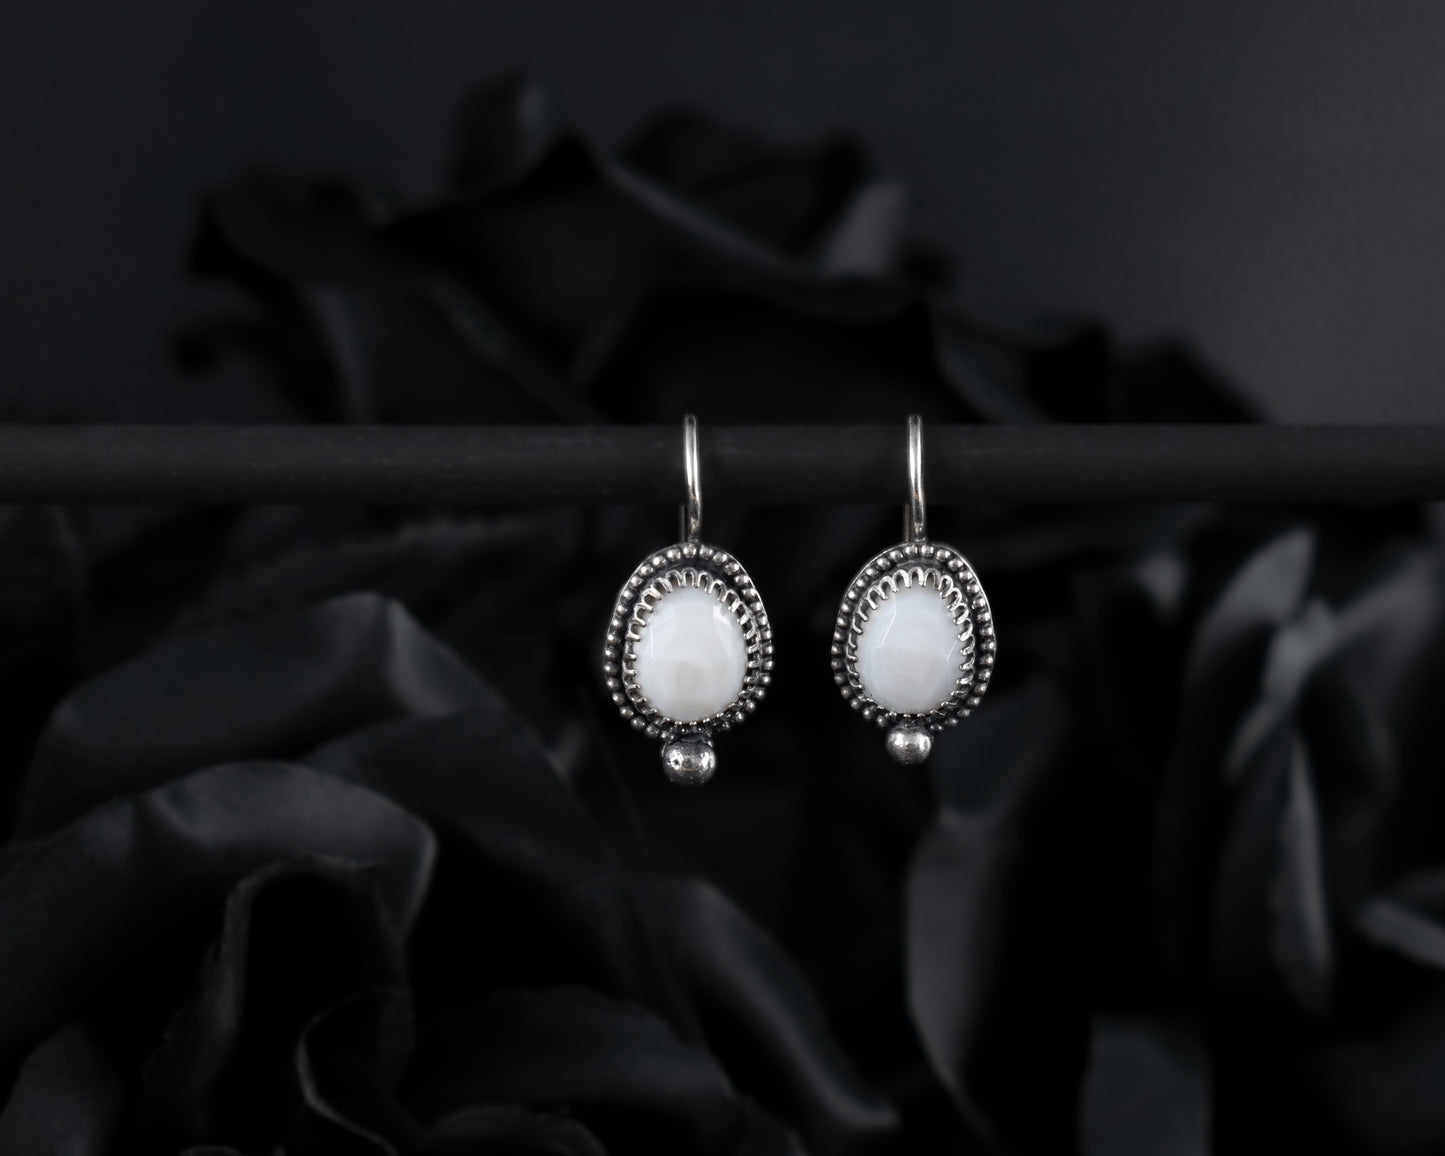 EKRJ530 White Mother-Of-Pearl Shell Silver earrings